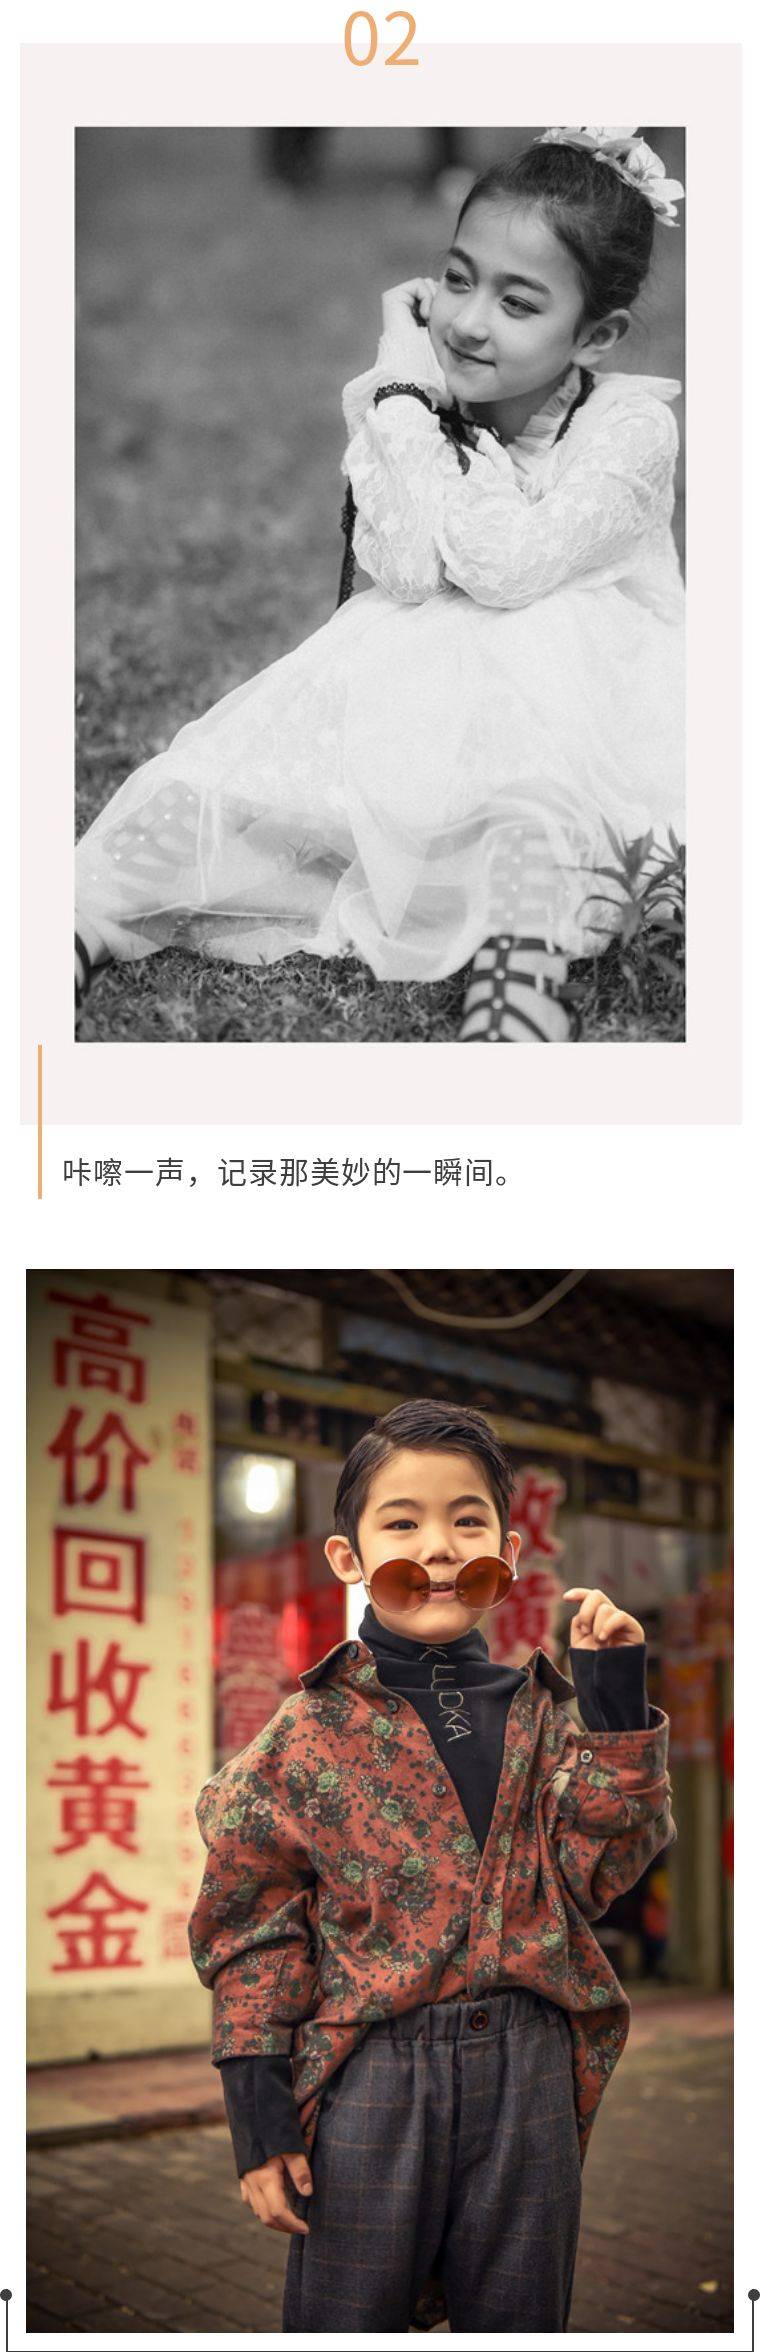 【上海】99抢原价1568元PANDORA摄影套餐，3套服装+2本相册+可拍摄亲子或外景，七店通用！让你的孩子秒变网红萌娃！